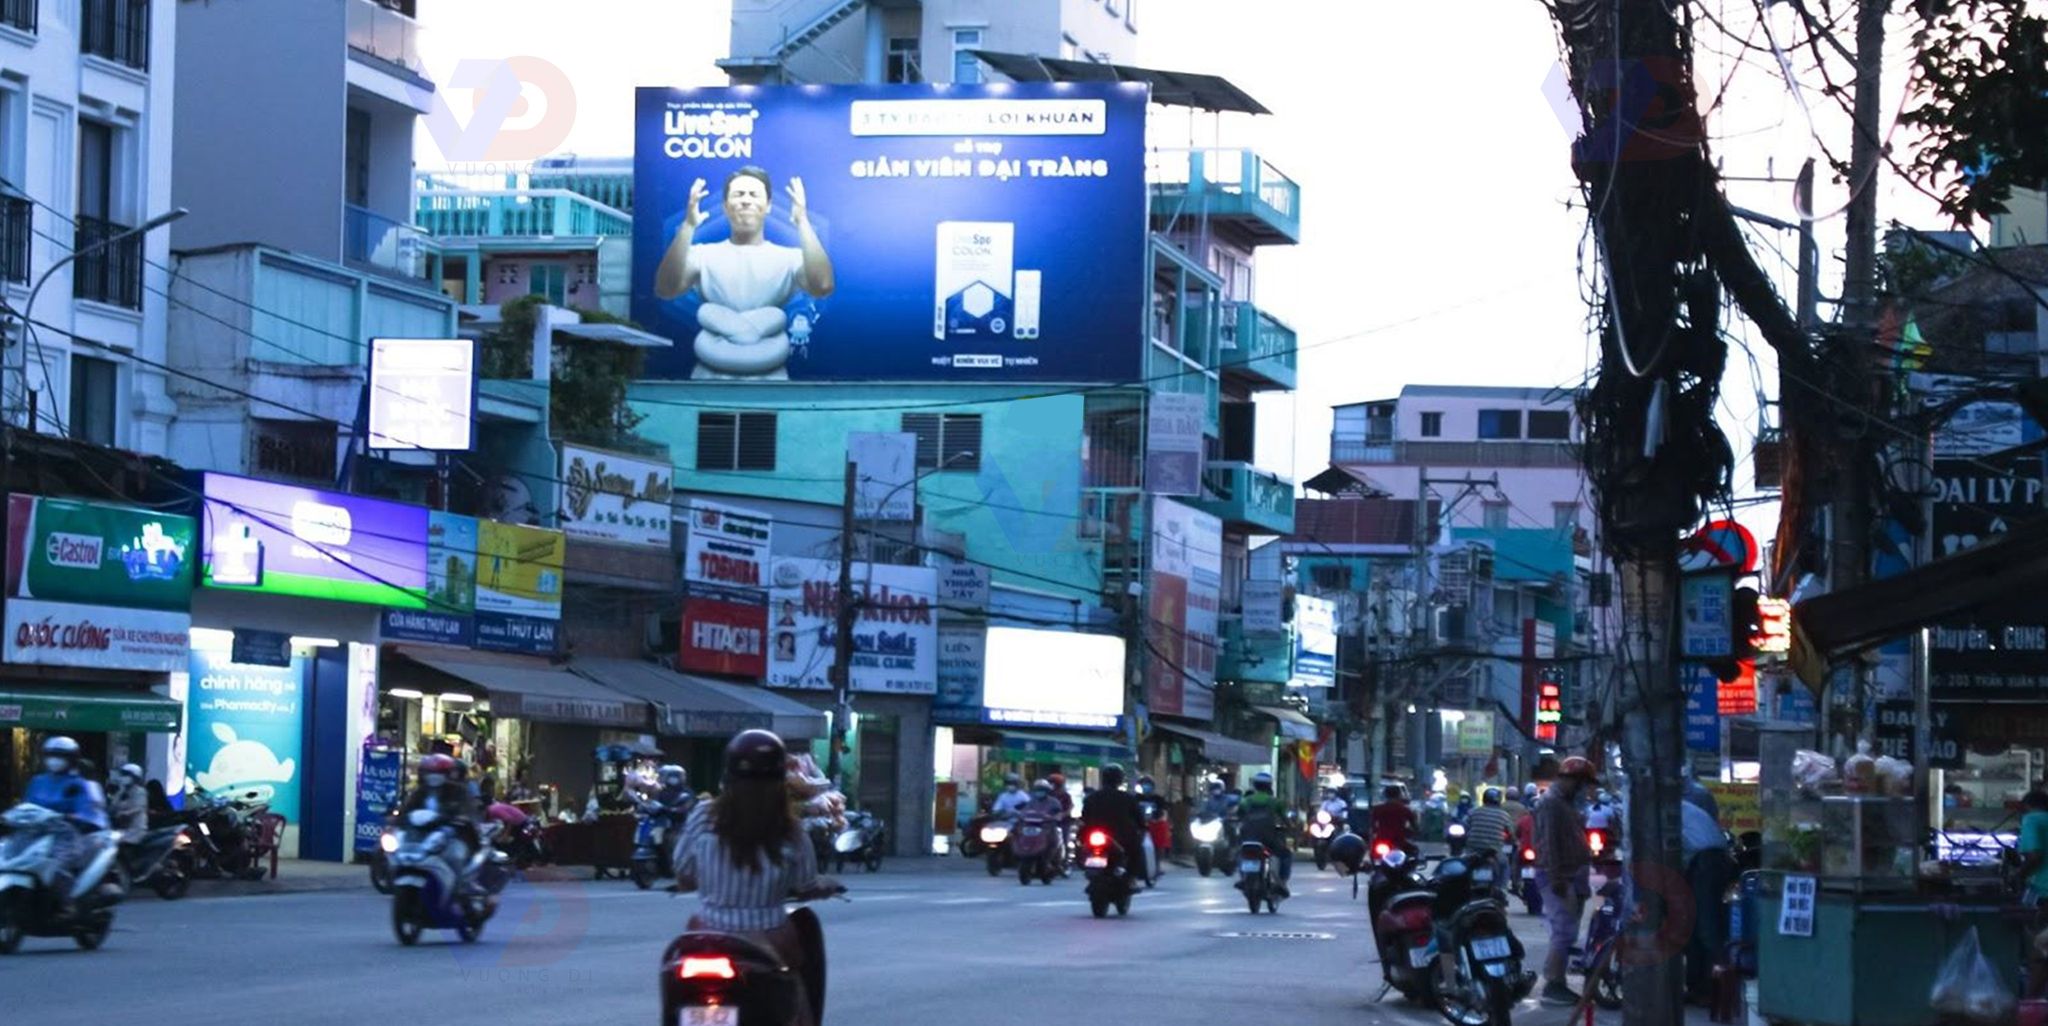 Bảng quảng cáo tại Vòng xoay Tân Thuận 1, Quận 7